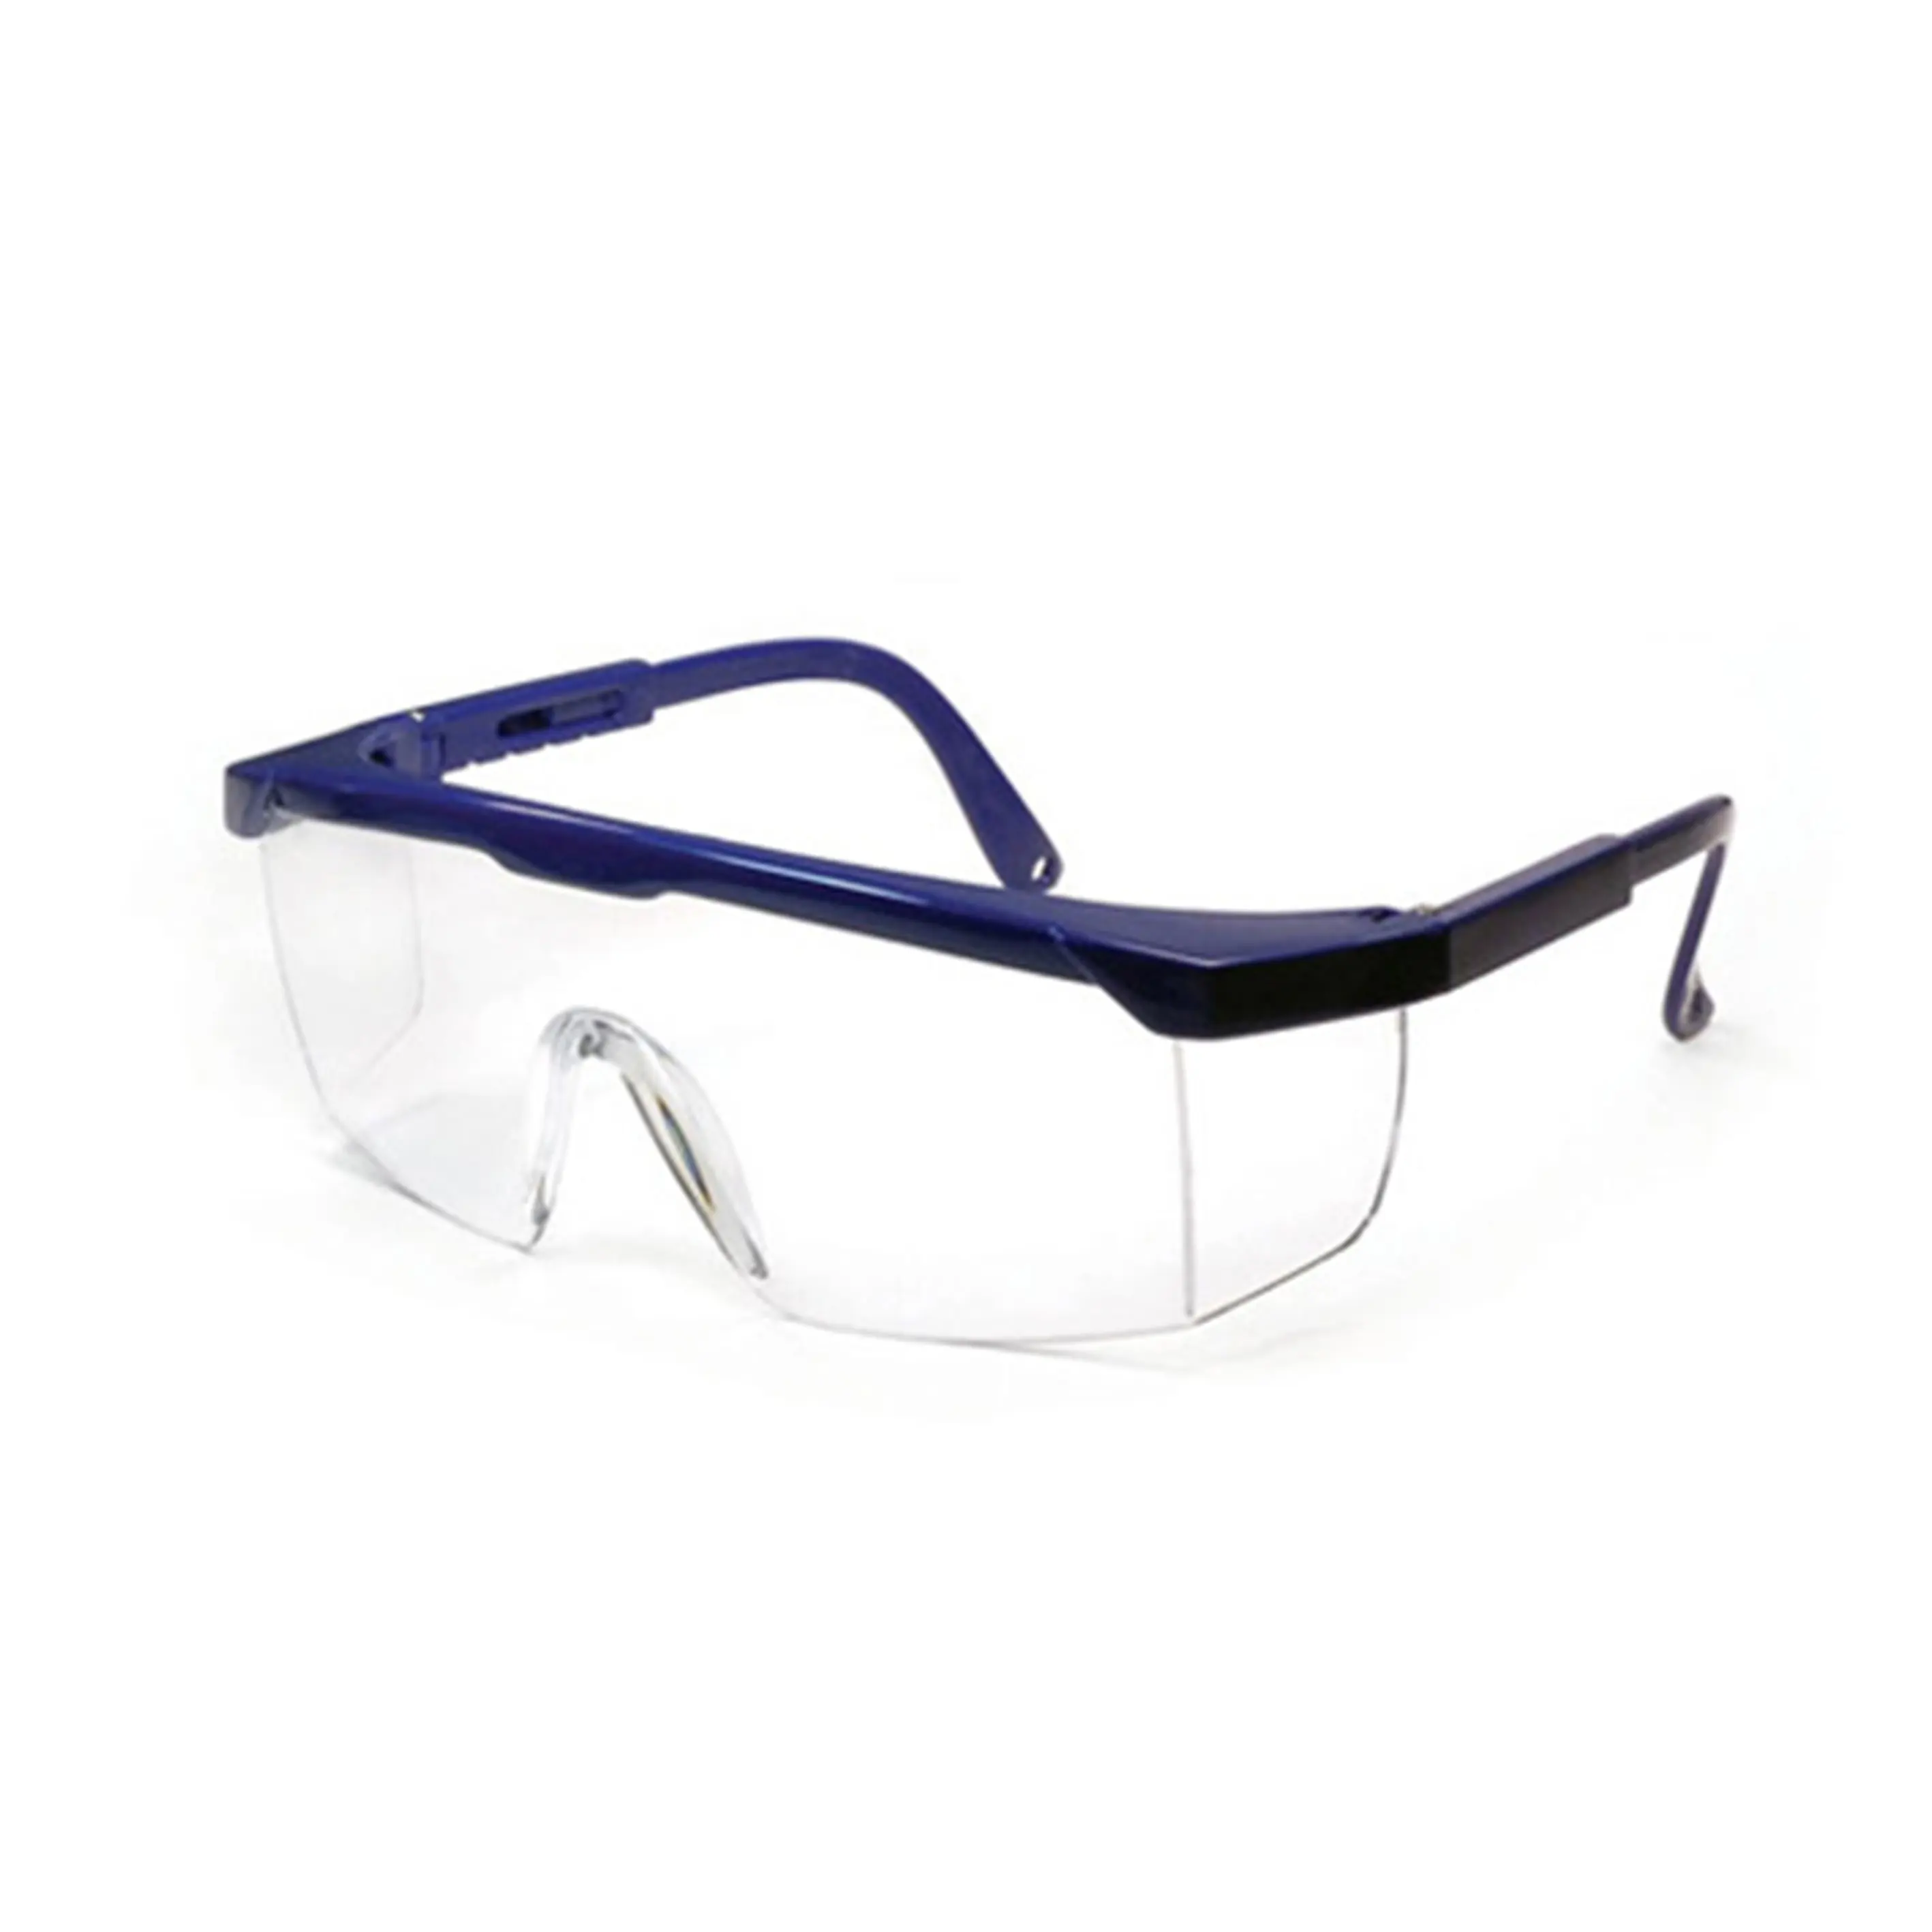 SG1001 Sicherheitsbrille Anti-Stoß-Arbeitsbrille schützende Seitenblende Brille Sicherheitsschweißbrille CE